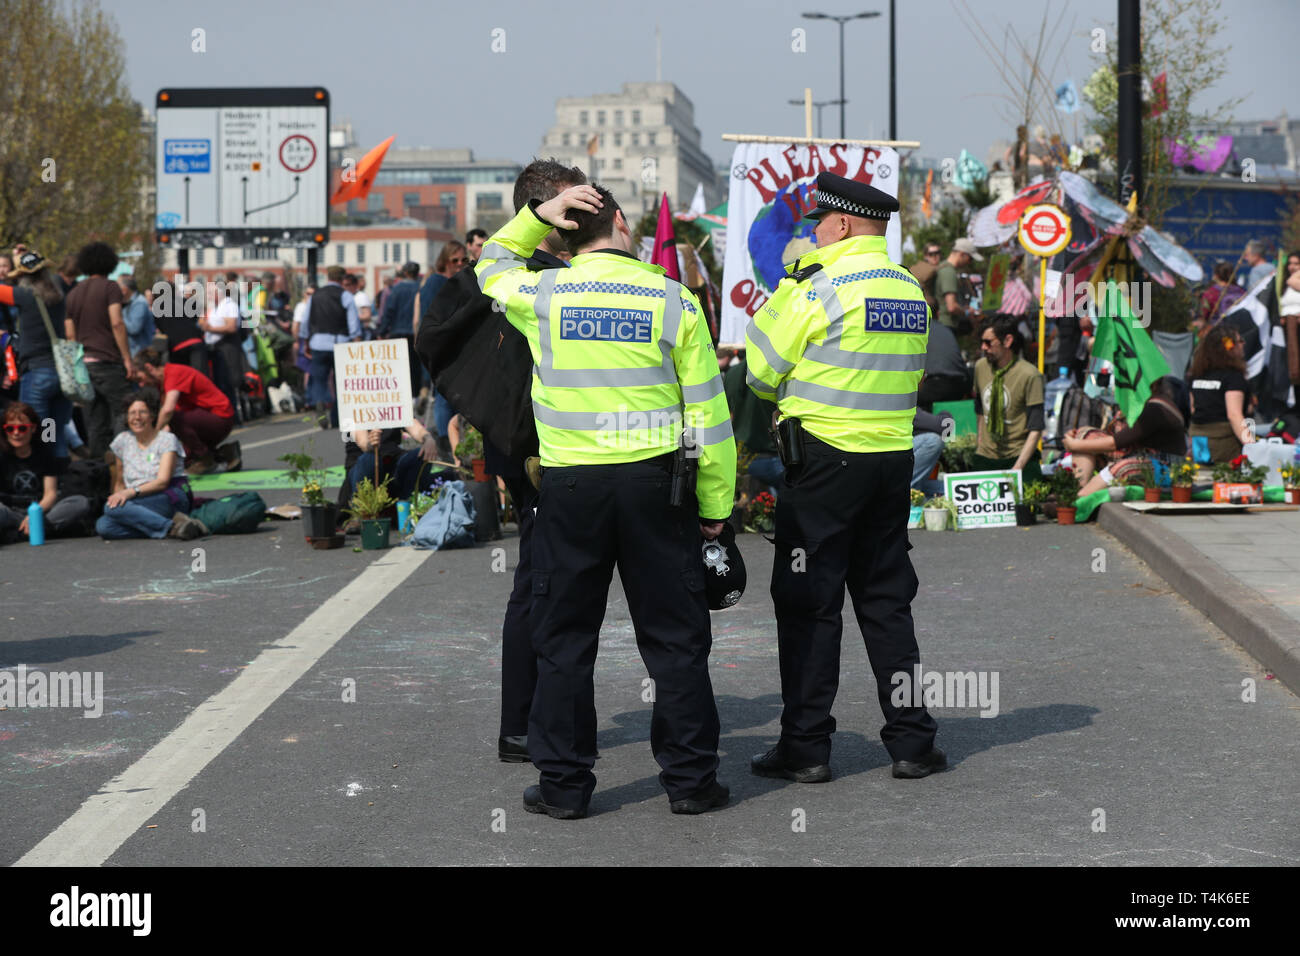 Estinzione della ribellione manifestanti sul ponte di Waterloo, Londra. Circa 290 persone sono state arrestate in connessione con le dimostrazioni della ribellione di estinzione gruppo. Foto Stock